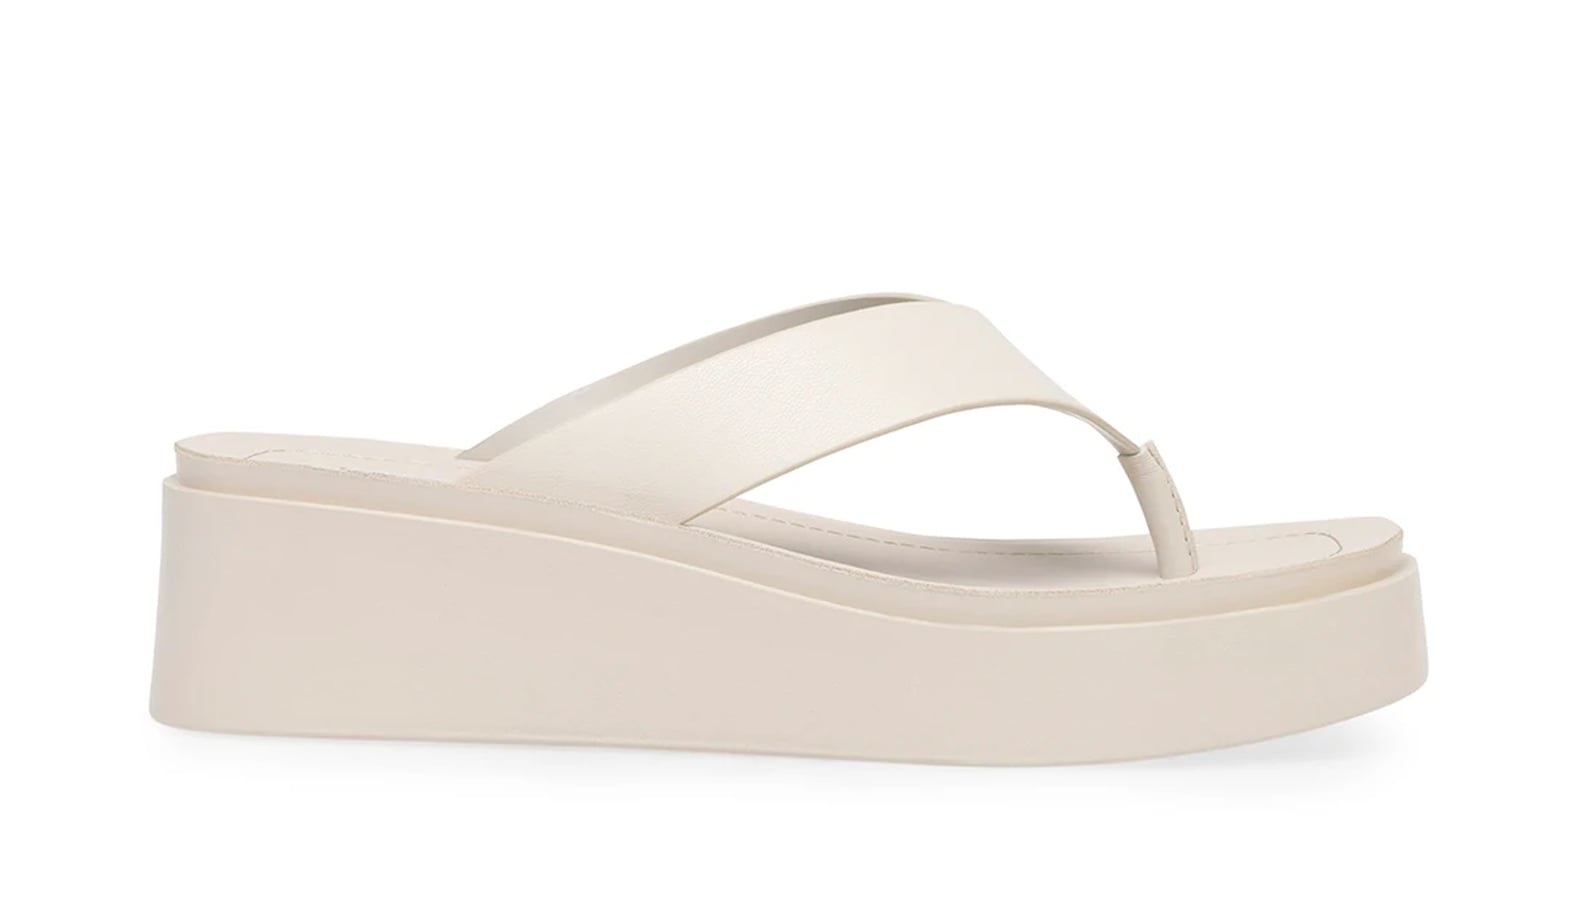 Soda Sandals Are the '90s Comeback Shoe For Summer 2021 | POPSUGAR Fashion